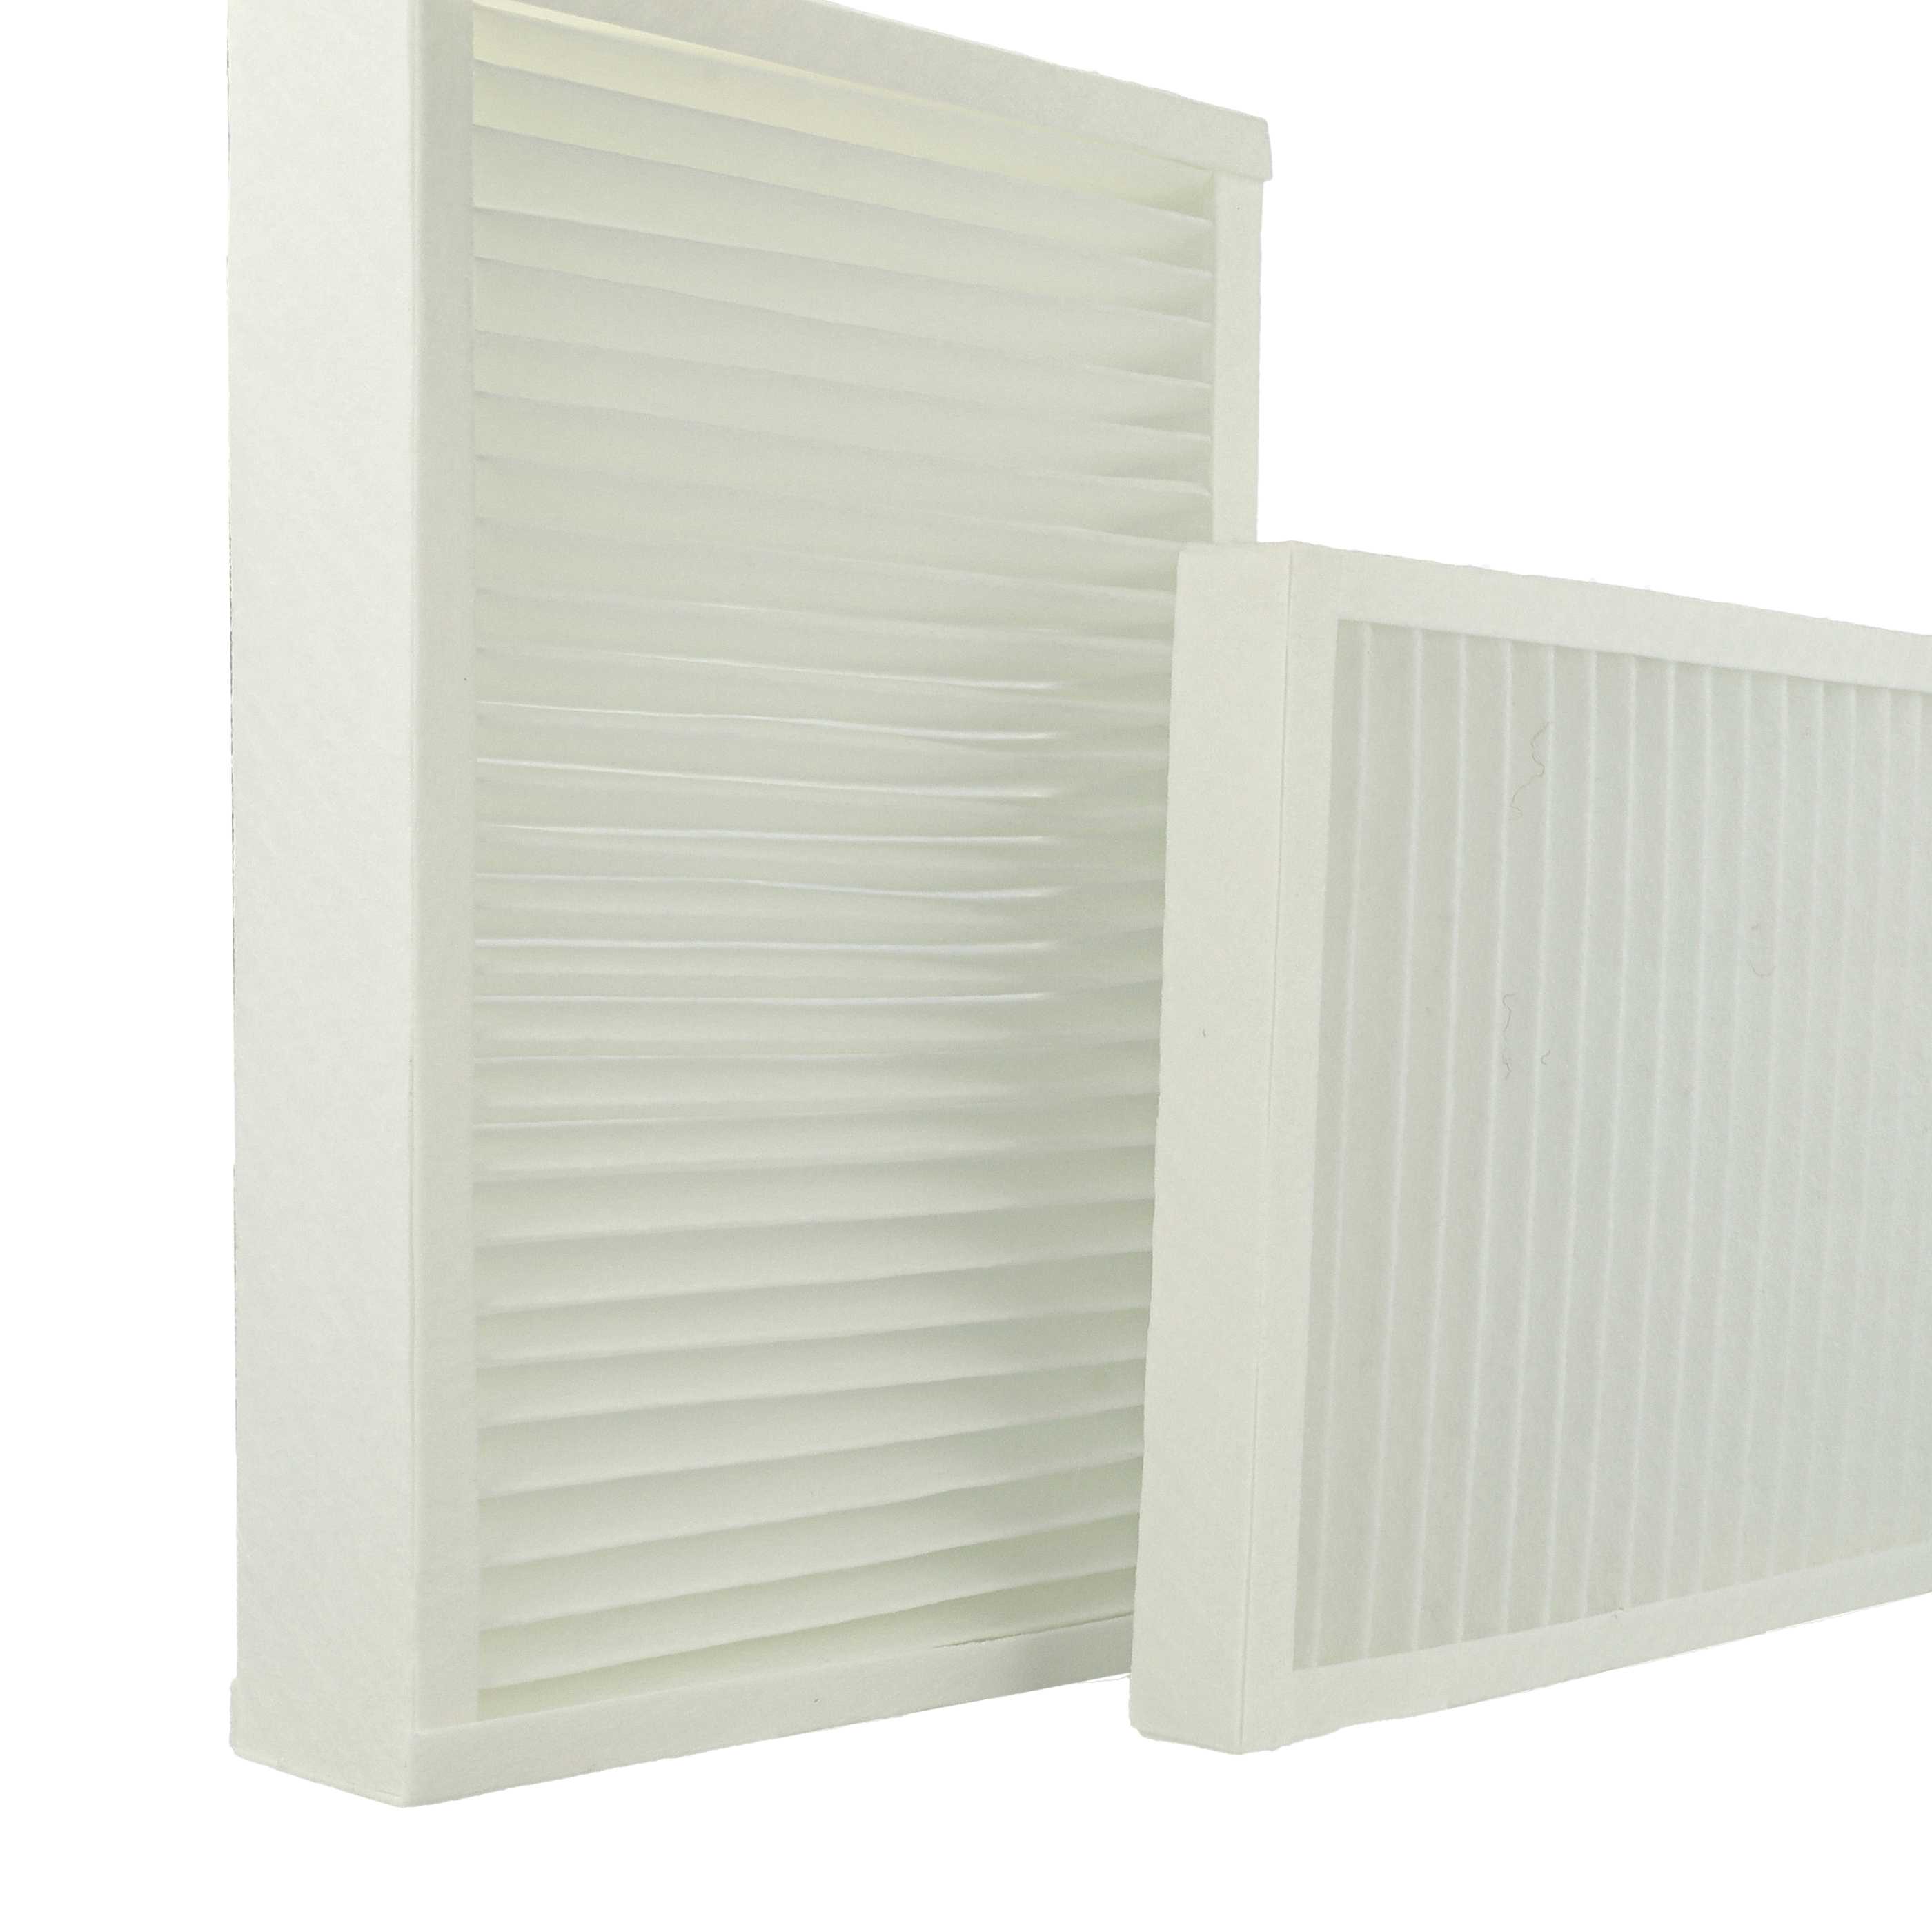 2 Part Filter Set replaces Viessmann 7543981 for ventilation system - Abluftfilter (G4), Zuluftfilter (F7)